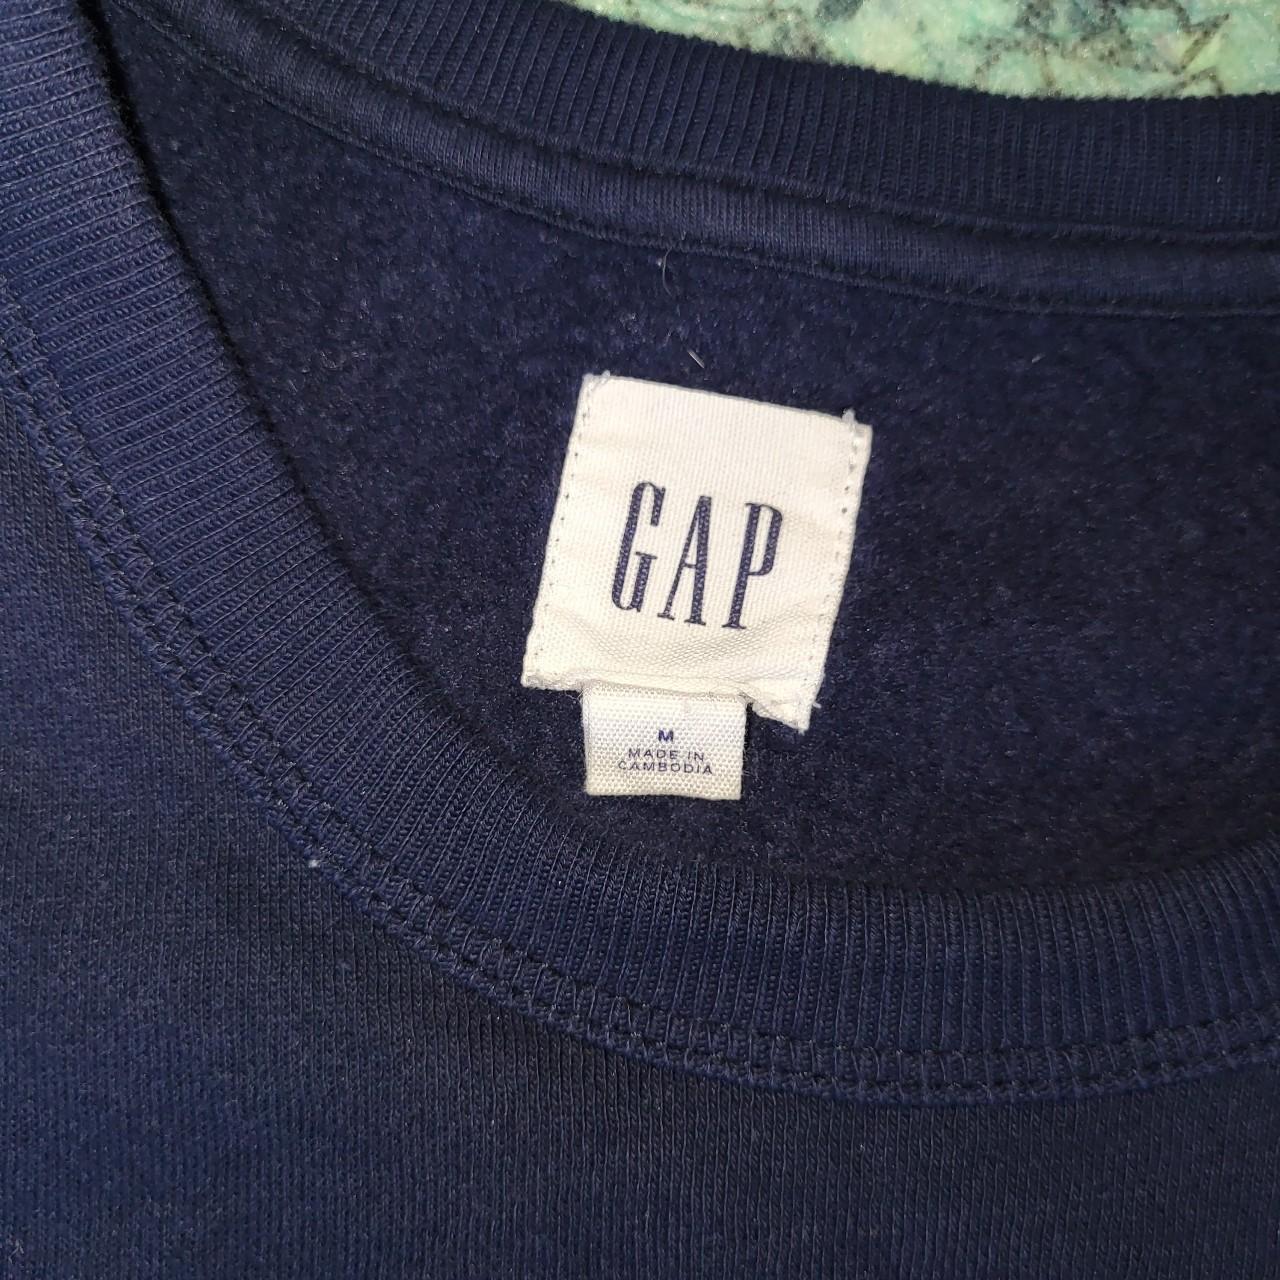 Vintage GAP Sweatshirt. Vintage Gap Original Spell... - Depop